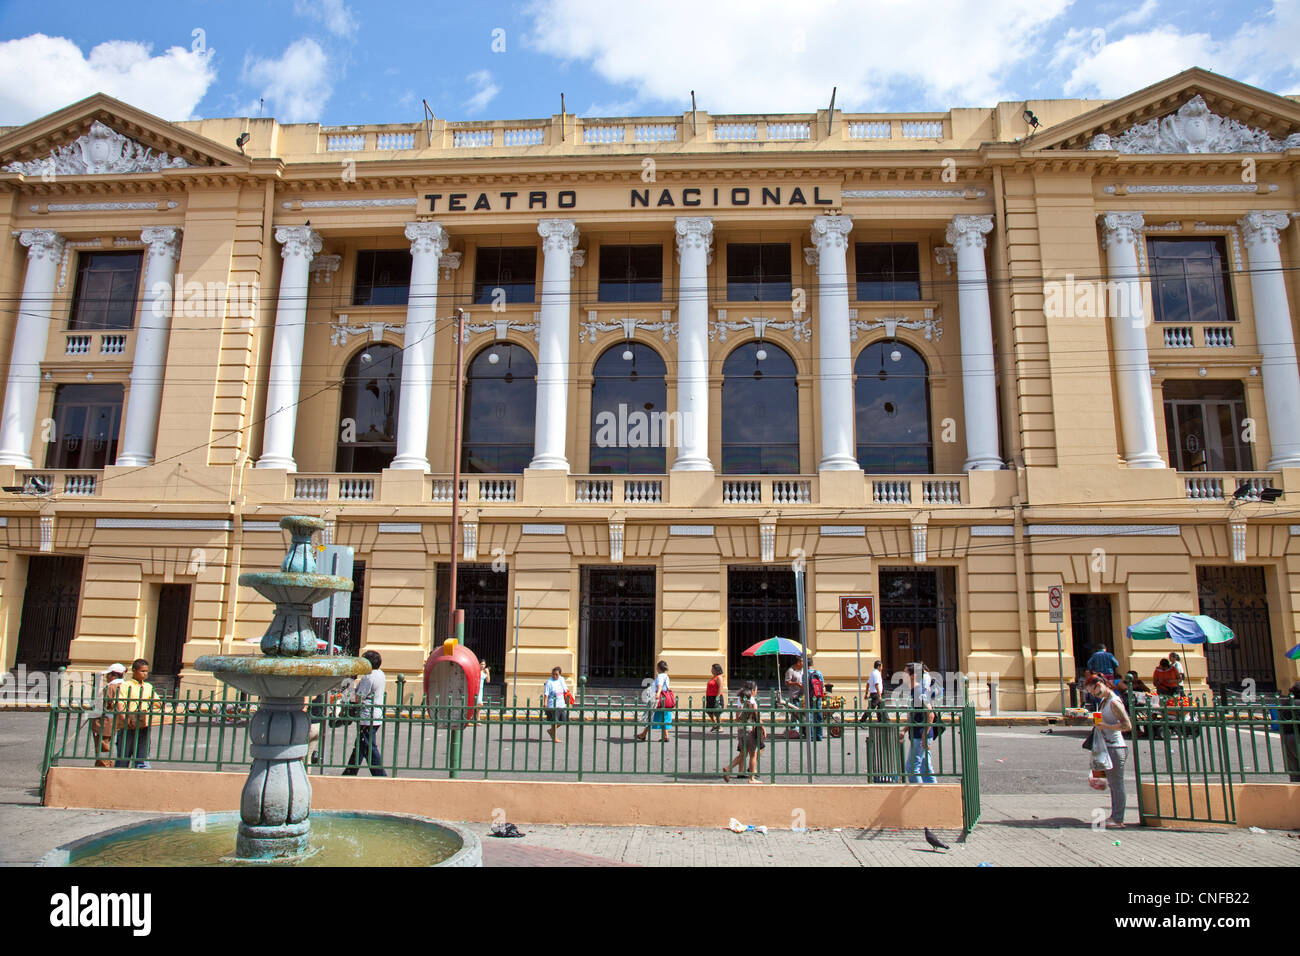 National Theater, Teatro Nacional, San Salvador, El Salvador Stock Photo